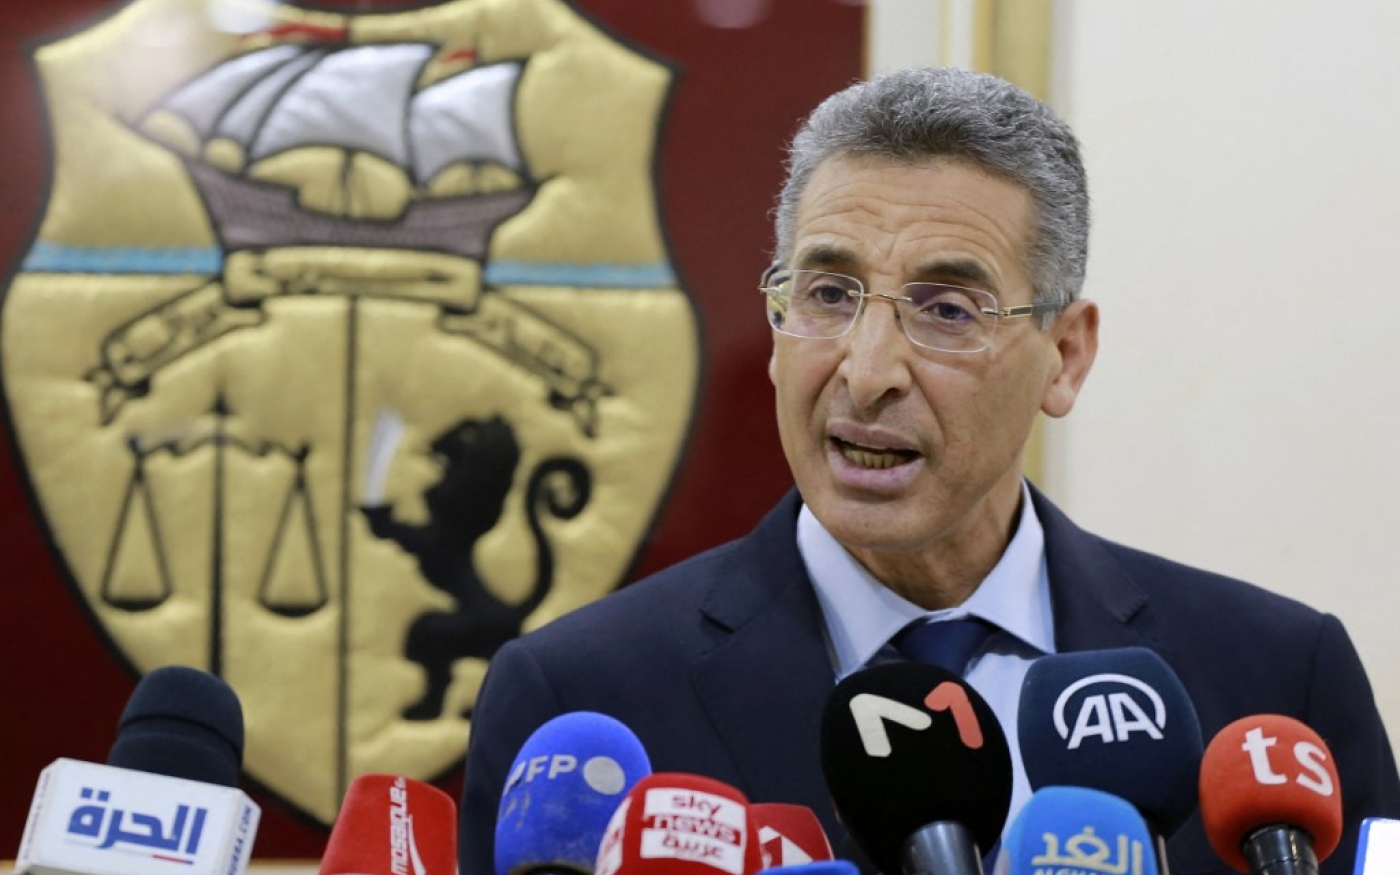 Le ministre tunisien de l’Intérieur, Taoufik Charfeddine, donne une conférence de presse lundi 3 janvier au sujet du dossier Bhiri (AFP/Fethi Belaïd)